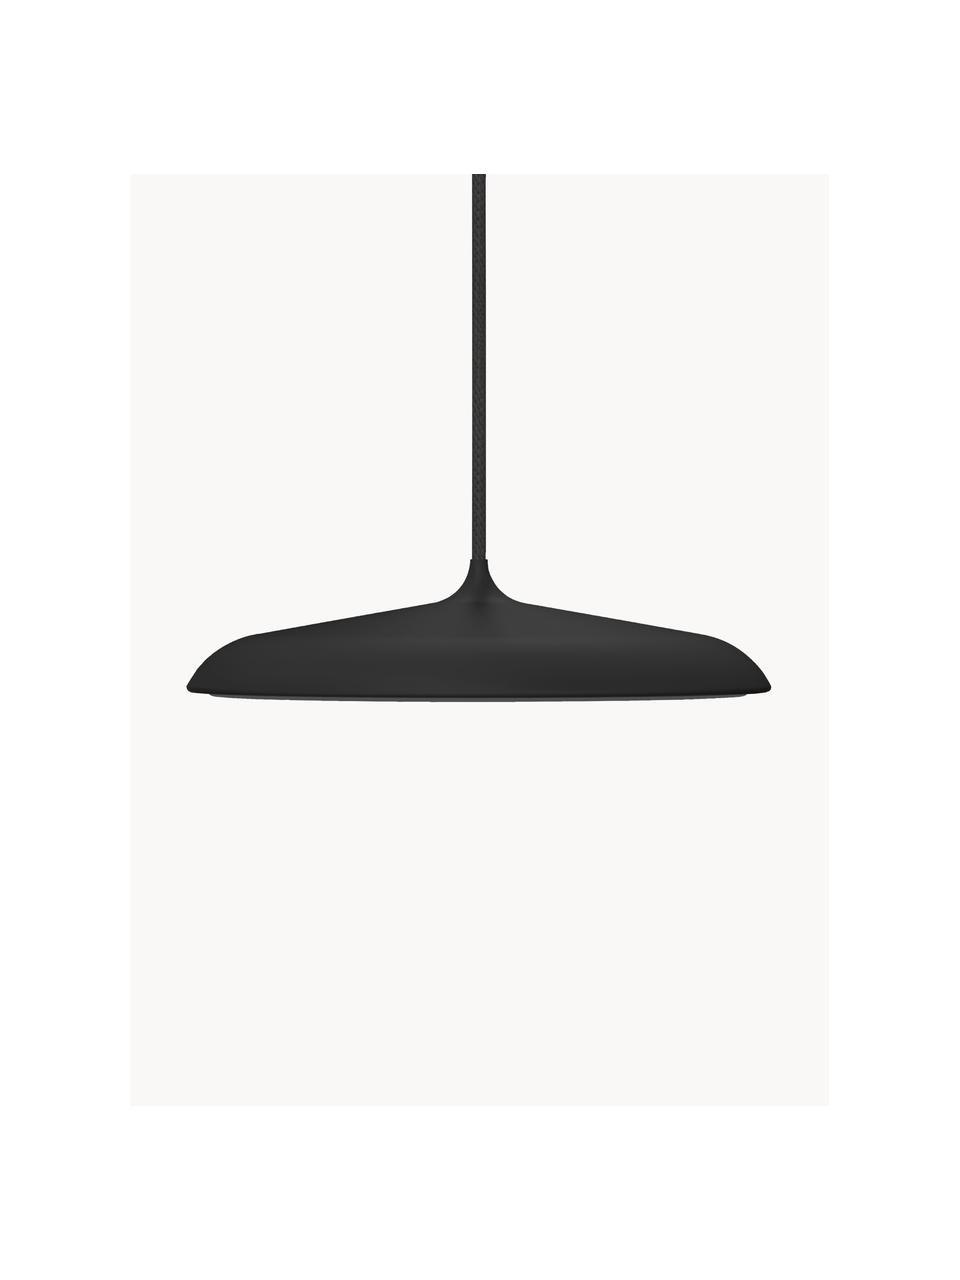 XS LED hanglamp Artist, Lampenkap: gelakt staal, Diffuser: kunststof, Lampenkap: zwart<br>Diffuser: wit<br>Plafondkap en snoer: zwart, Ø 25 x H 6 cm